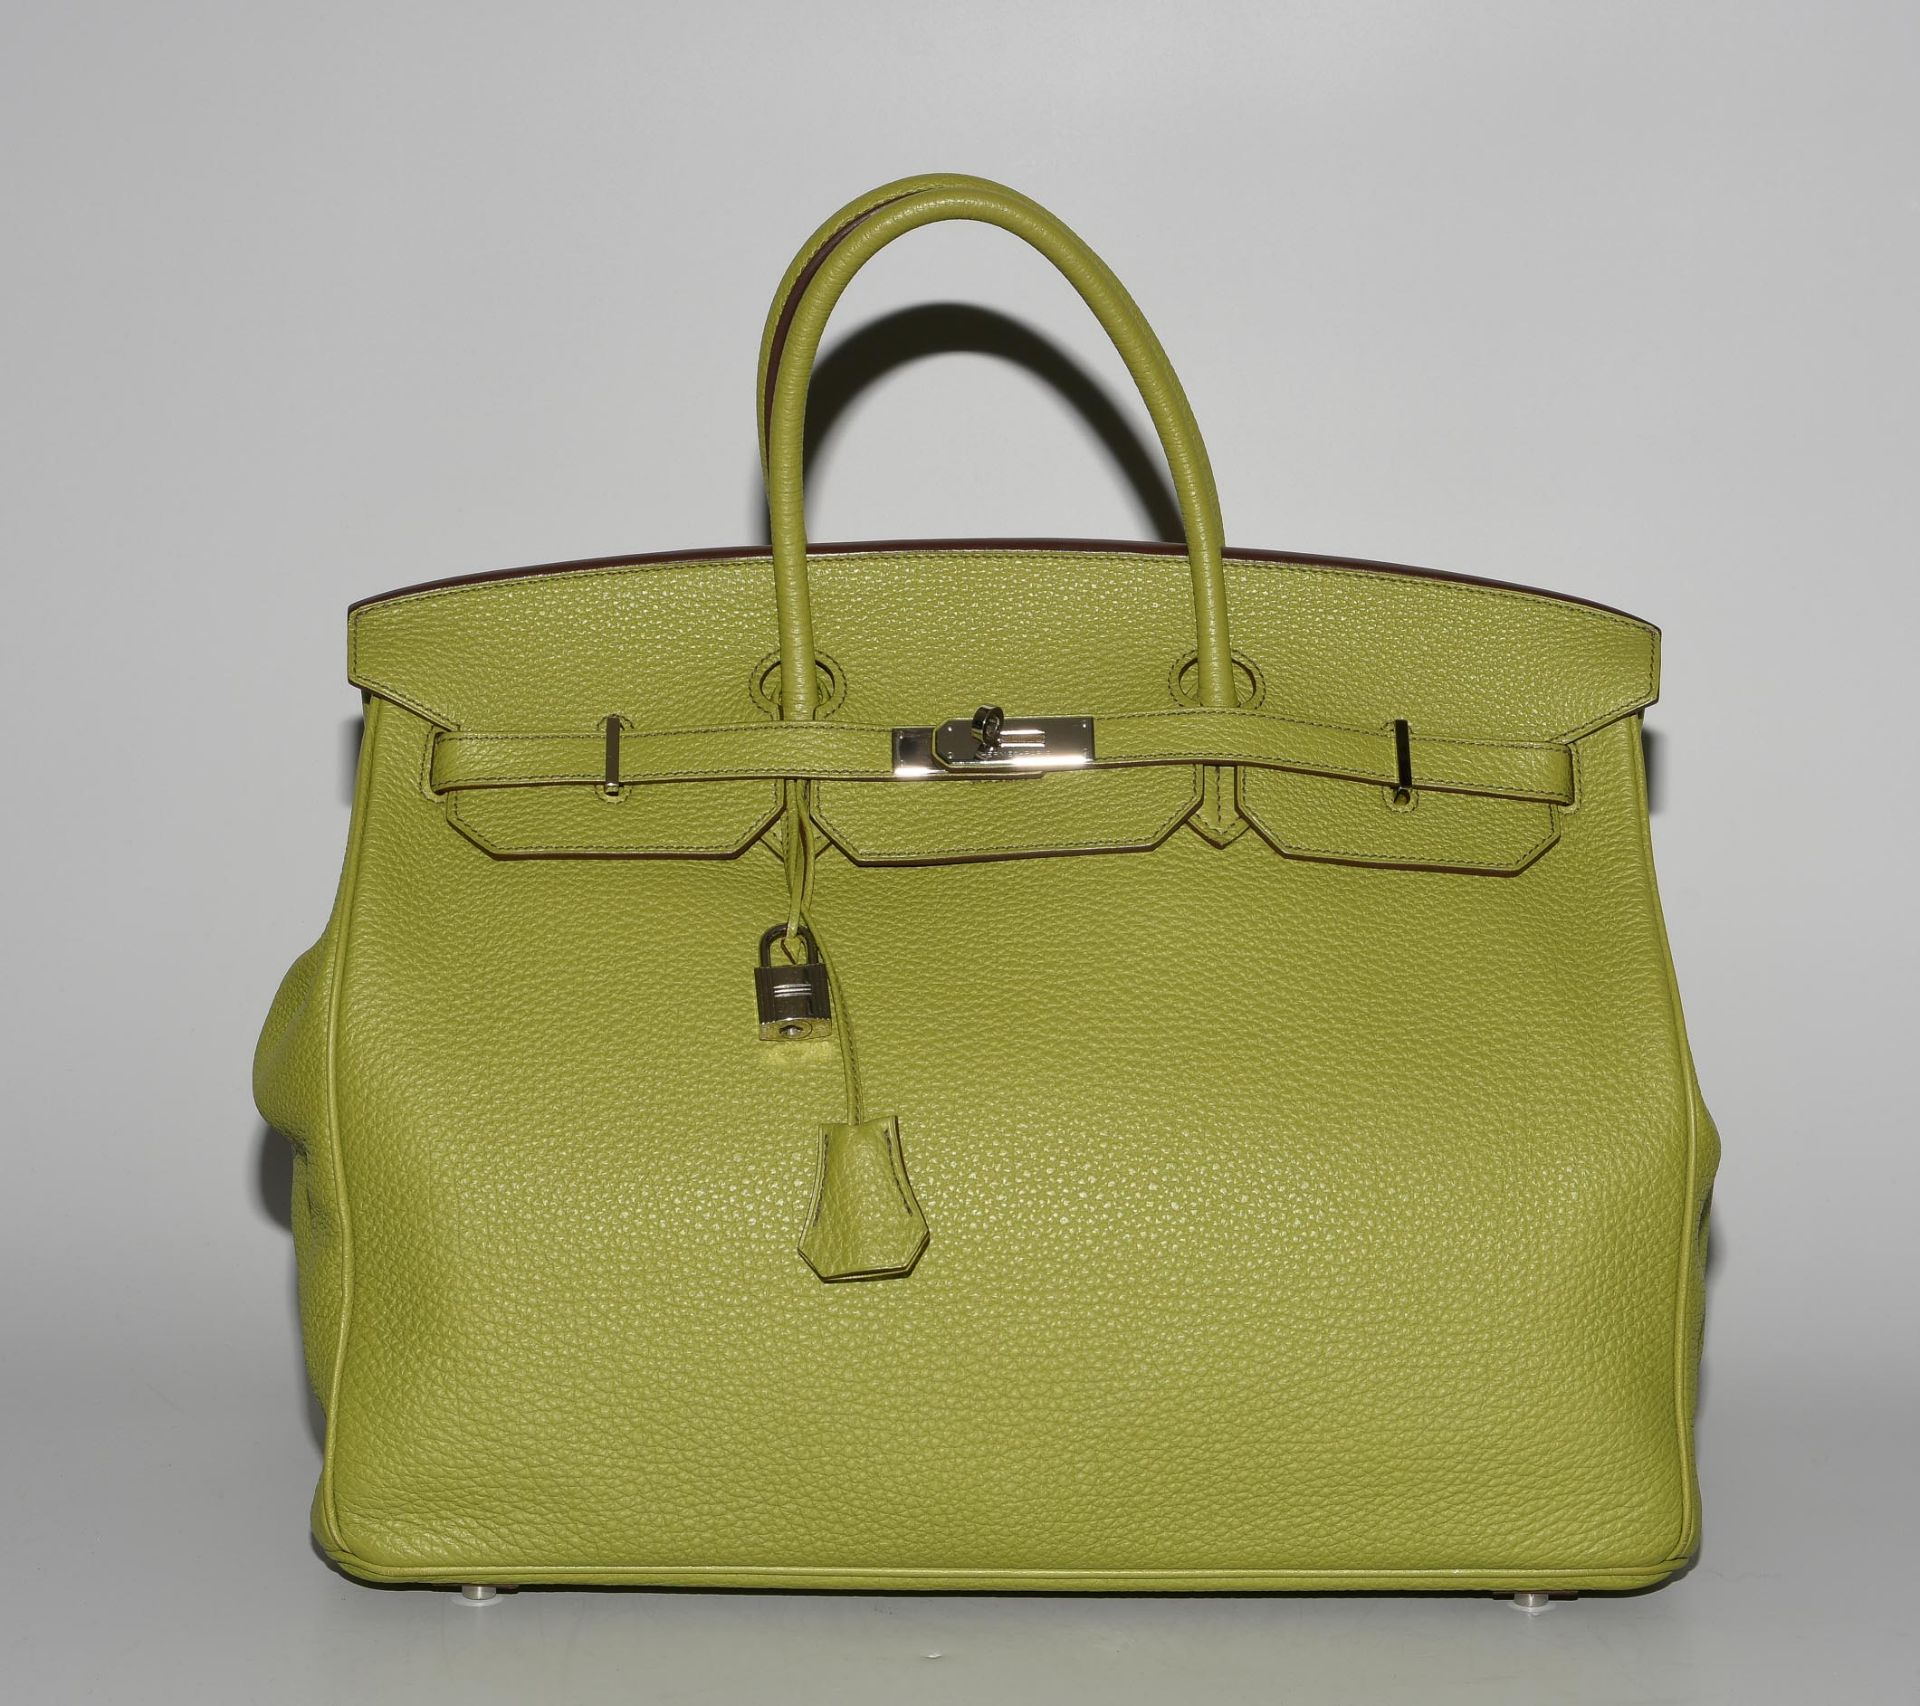 Hermès, Handtasche "Birkin" 40 cm - Image 2 of 21